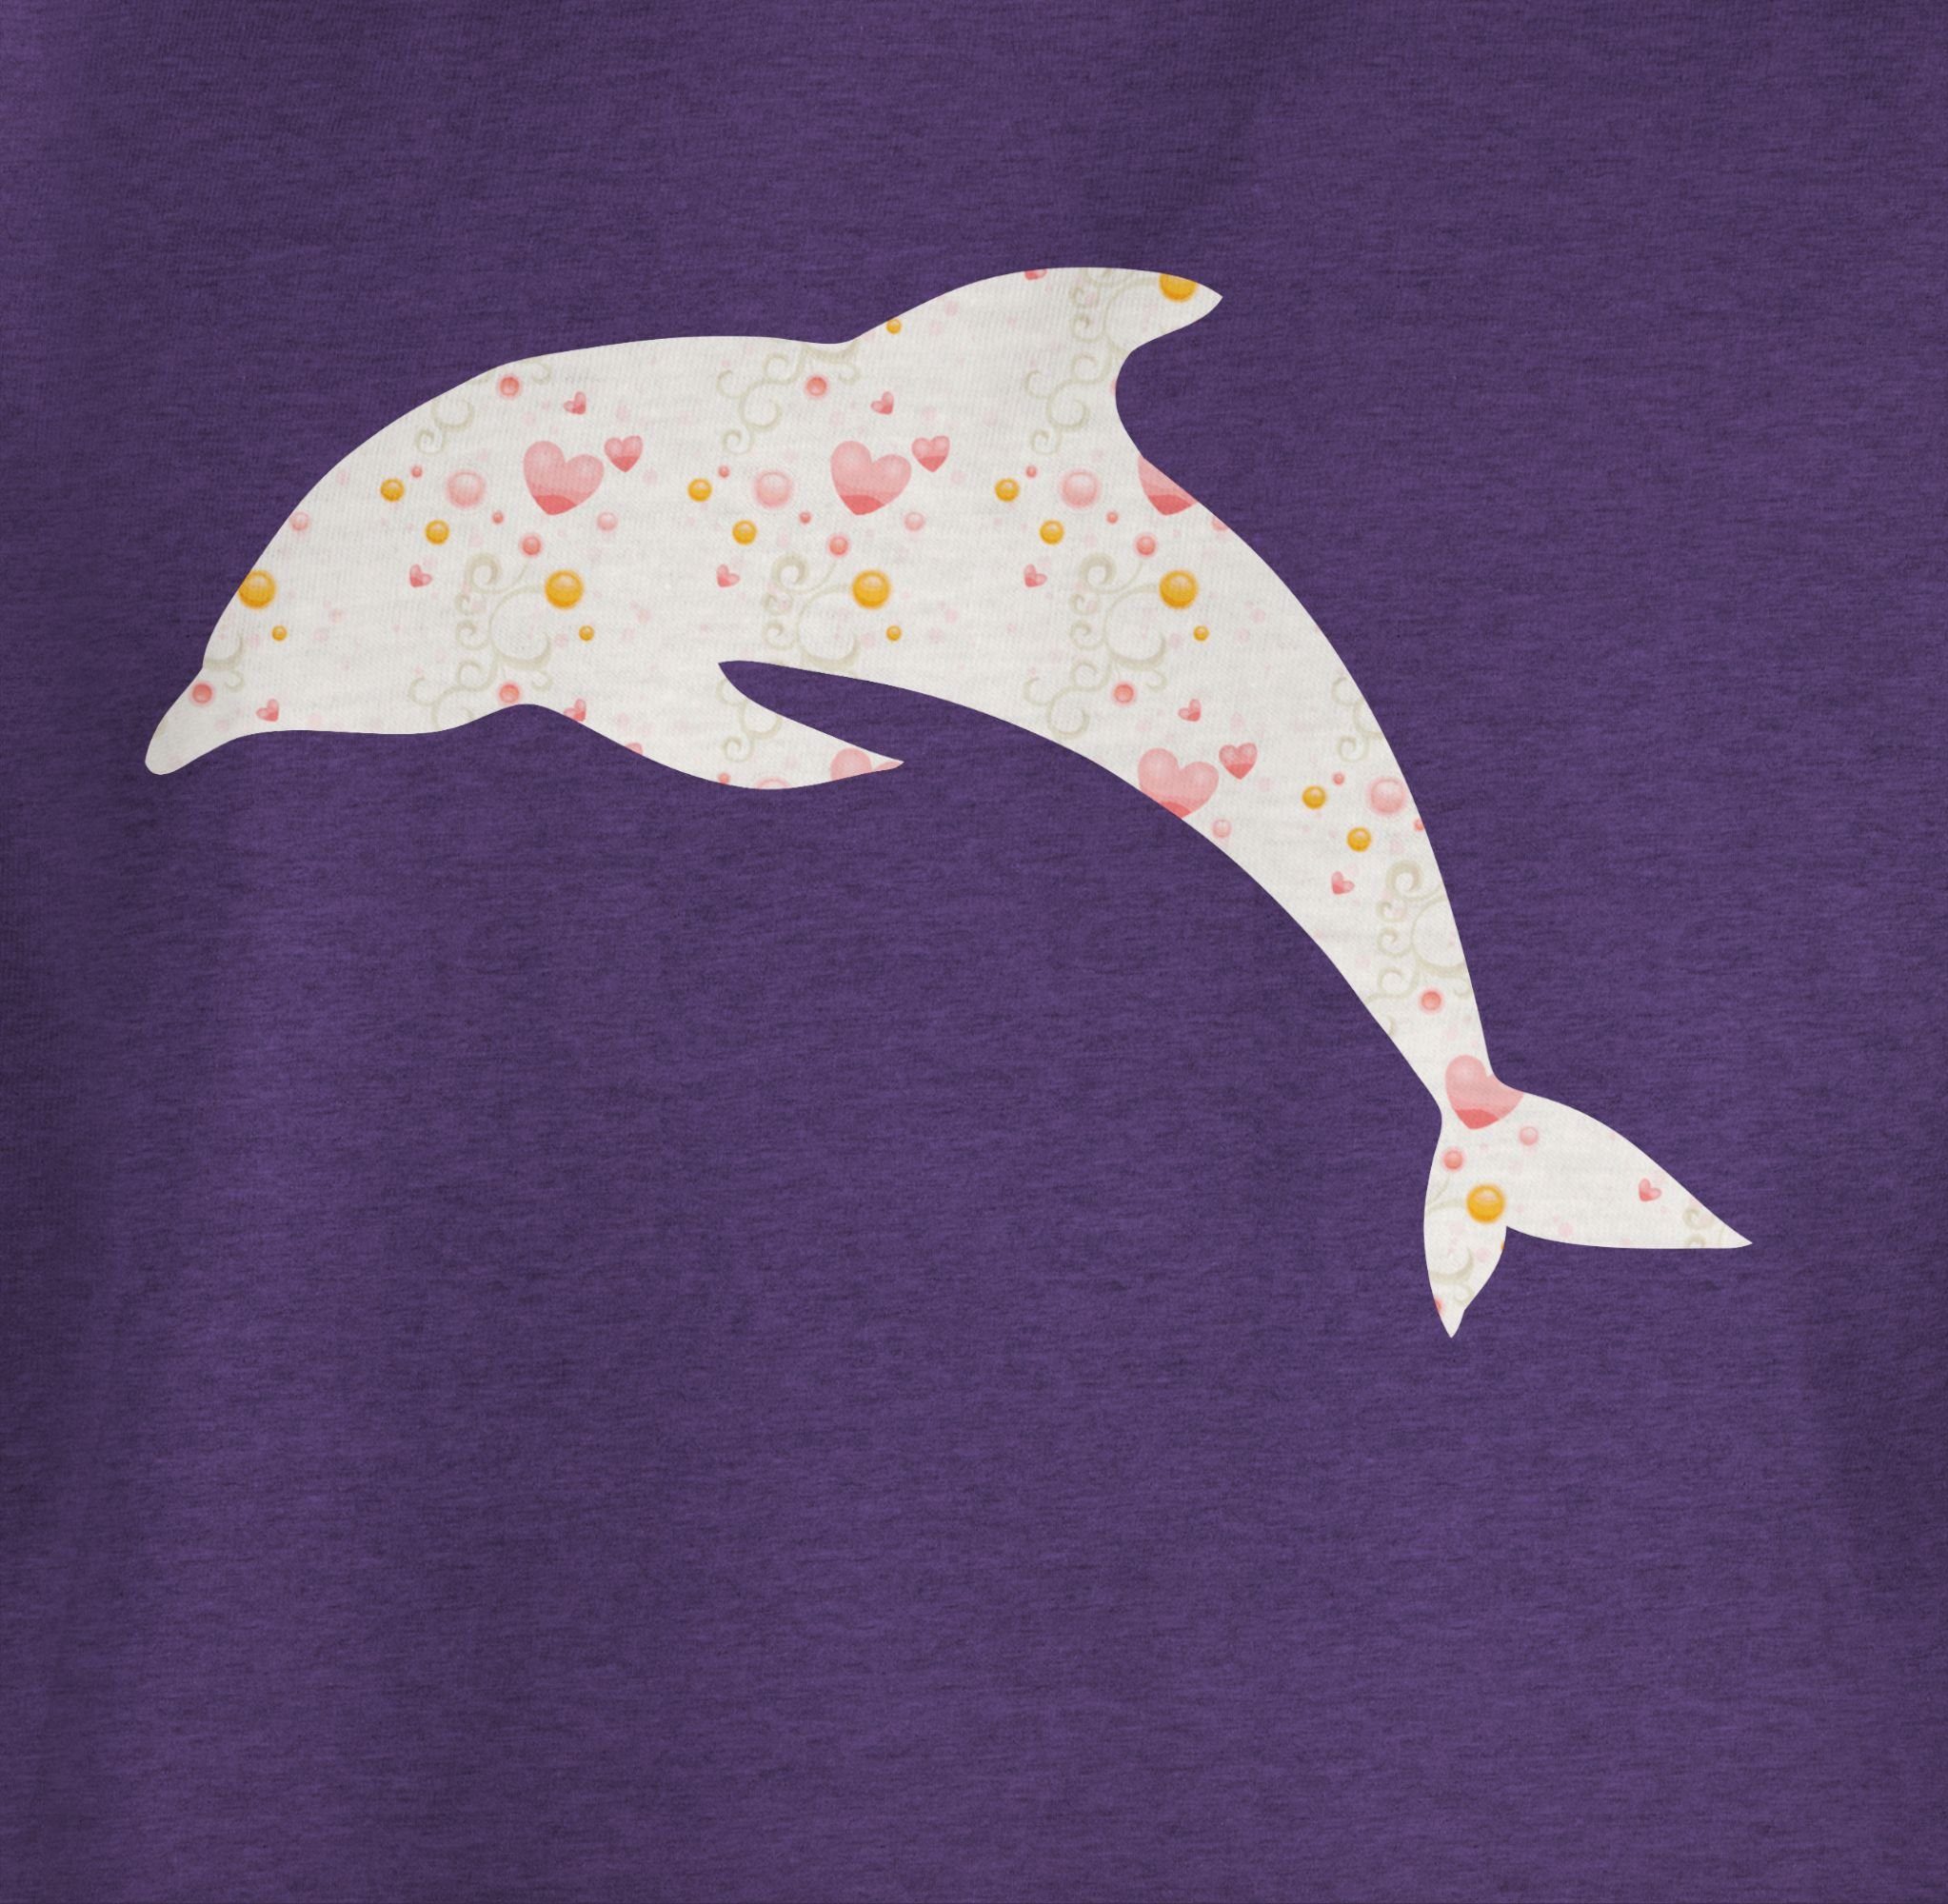 Lila 2 Delfin Shirtracer Meliert Print Herzen Tiermotiv Animal T-Shirt